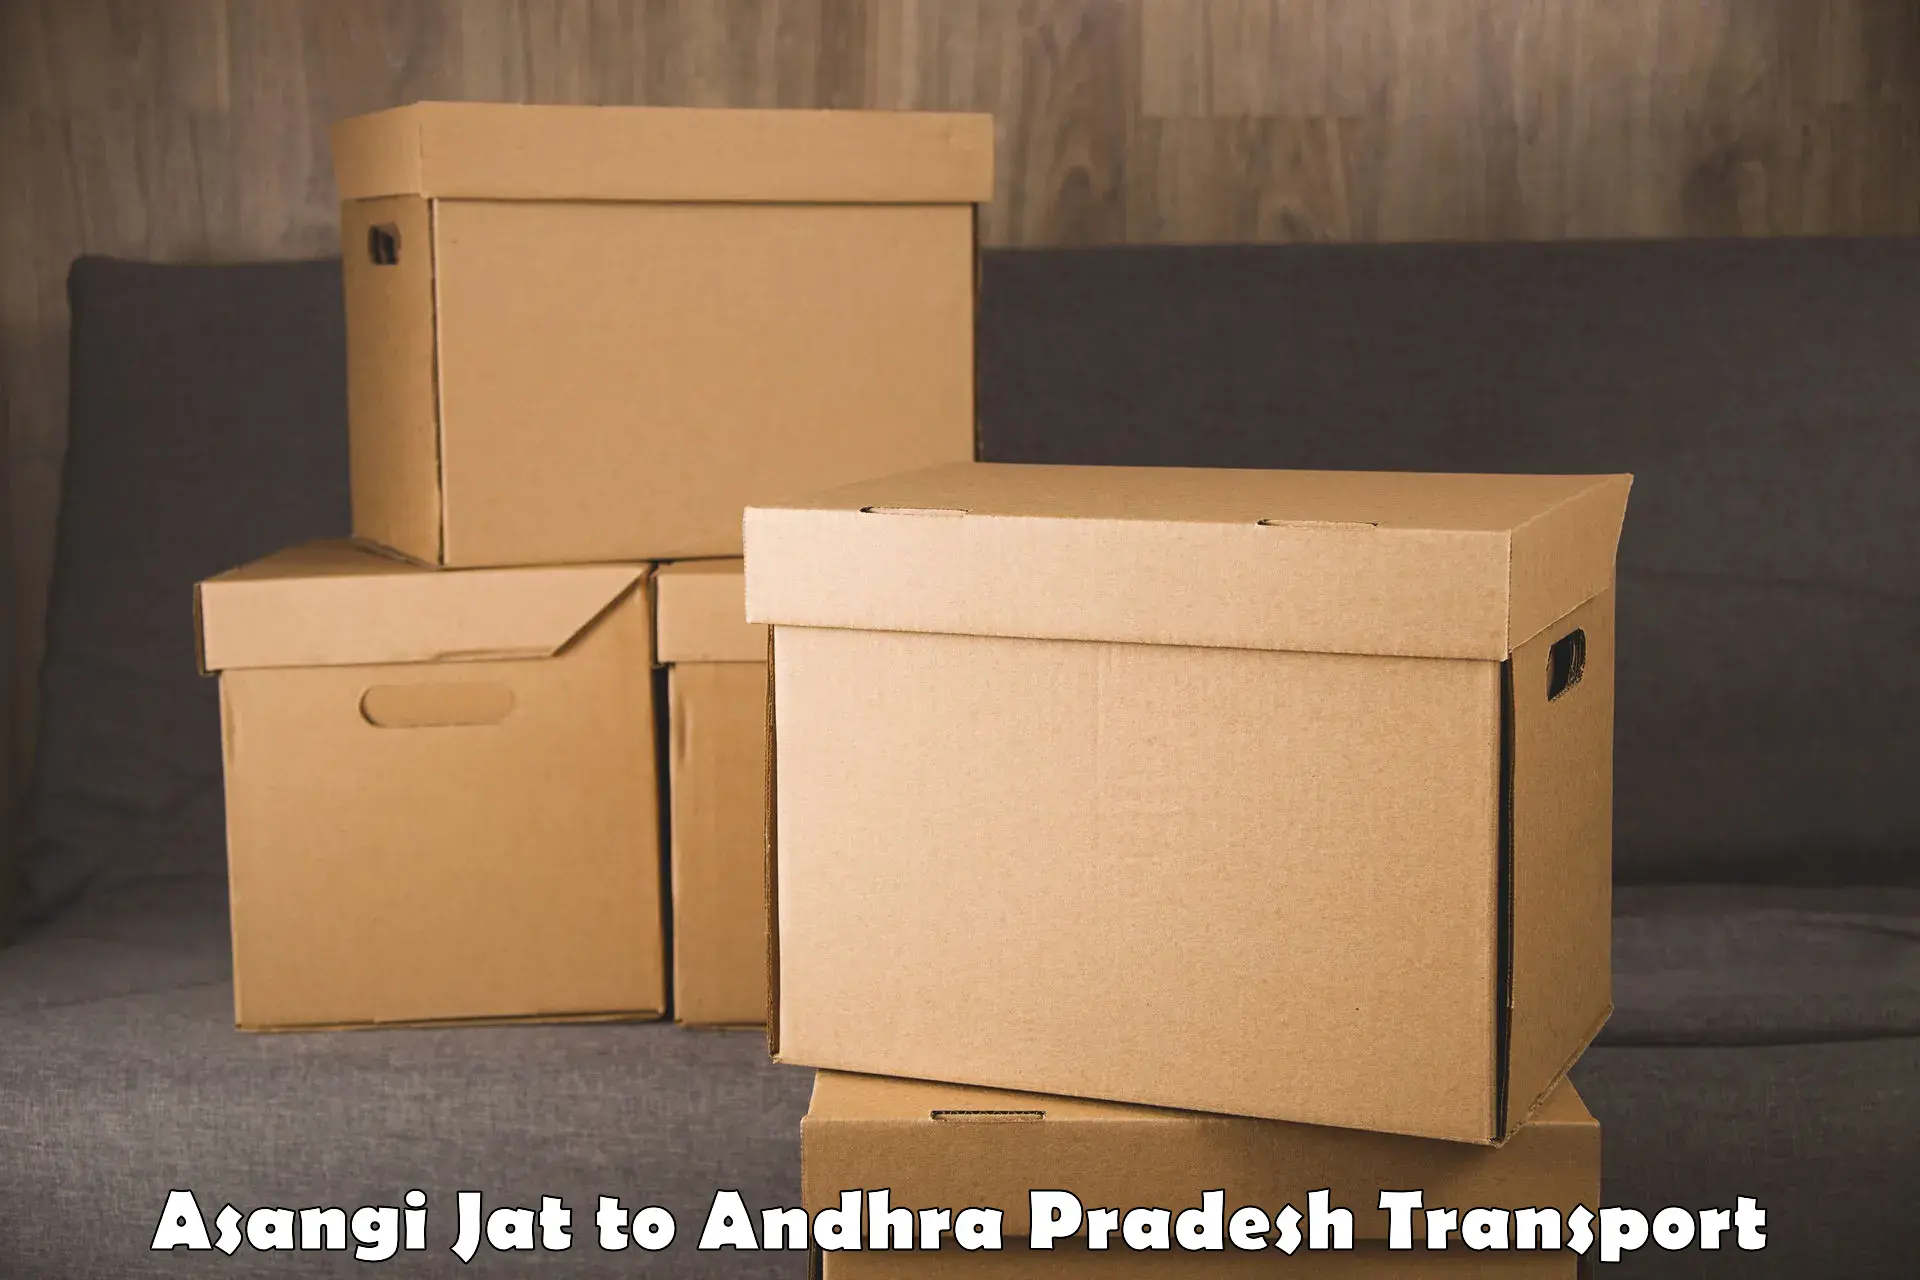 Nationwide transport services Asangi Jat to Andhra Pradesh